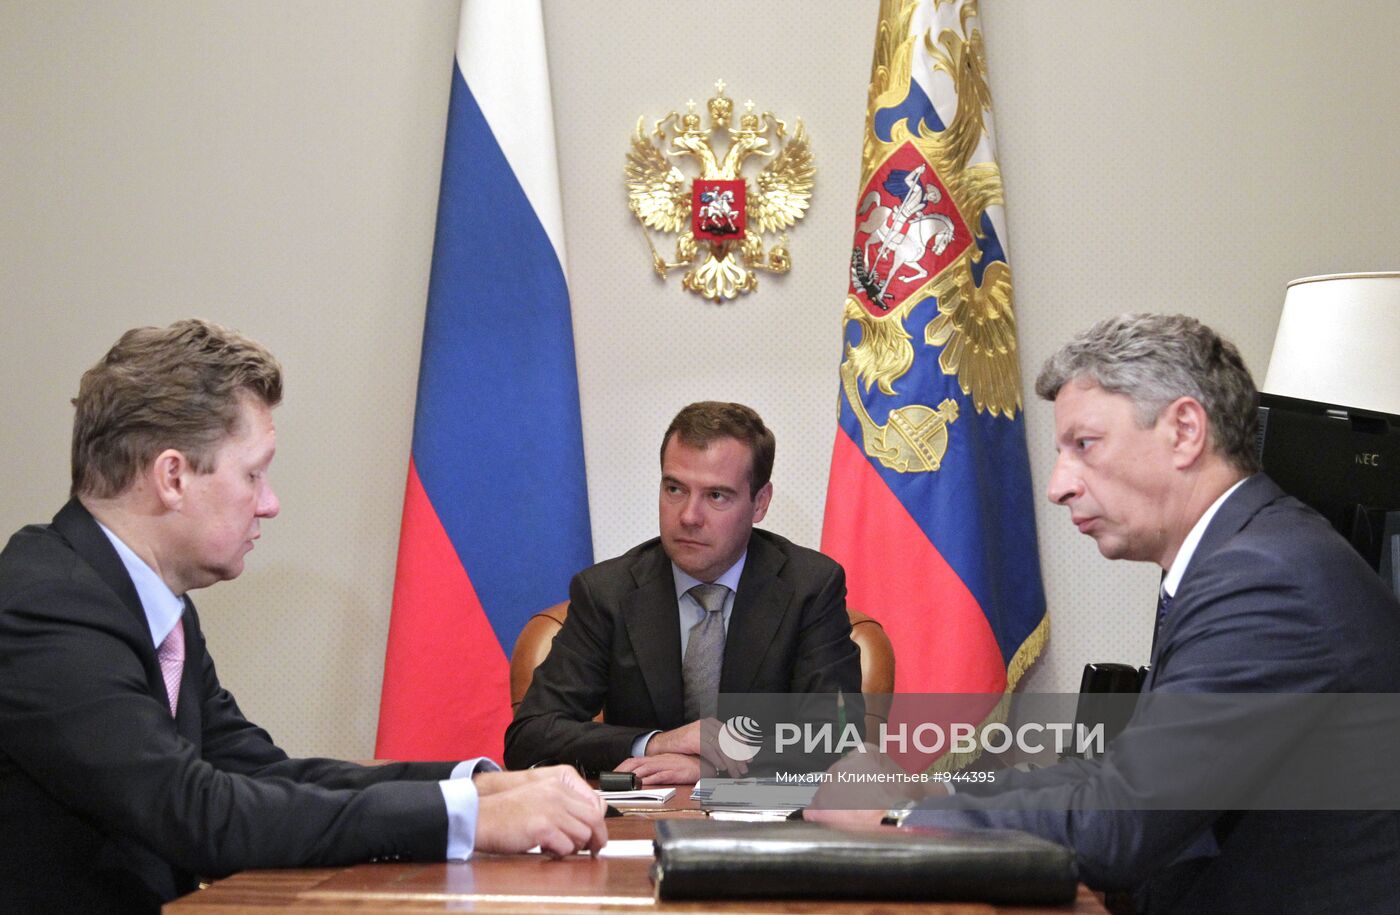 Д.Медведев провел ряд встреч в Сочи